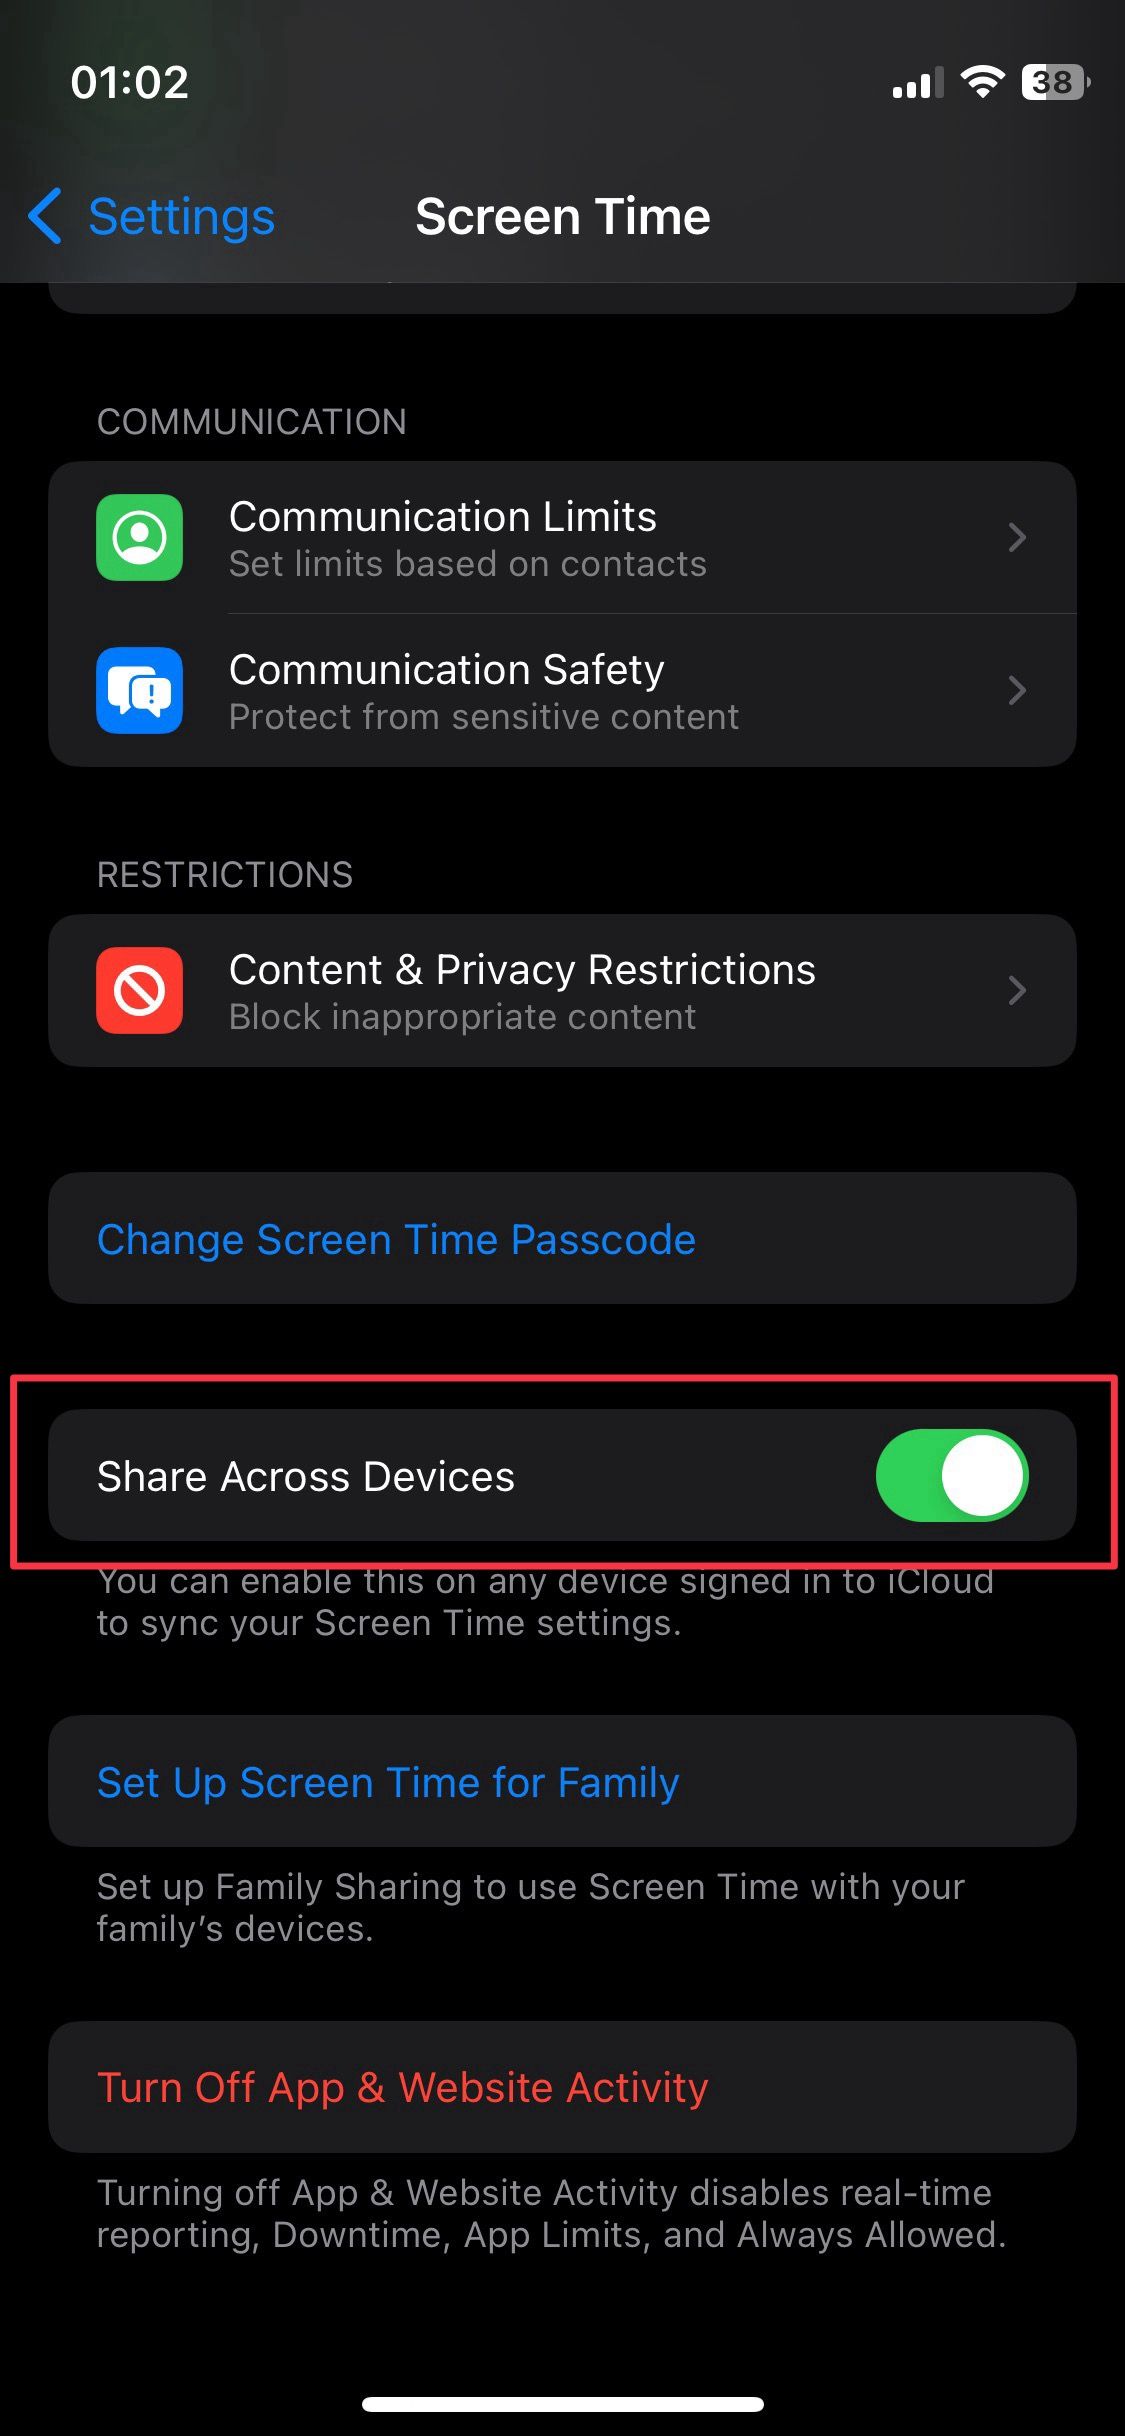 Captura de tela das configurações de tempo de tela do iOS mostrando o recurso Compartilhar entre dispositivos